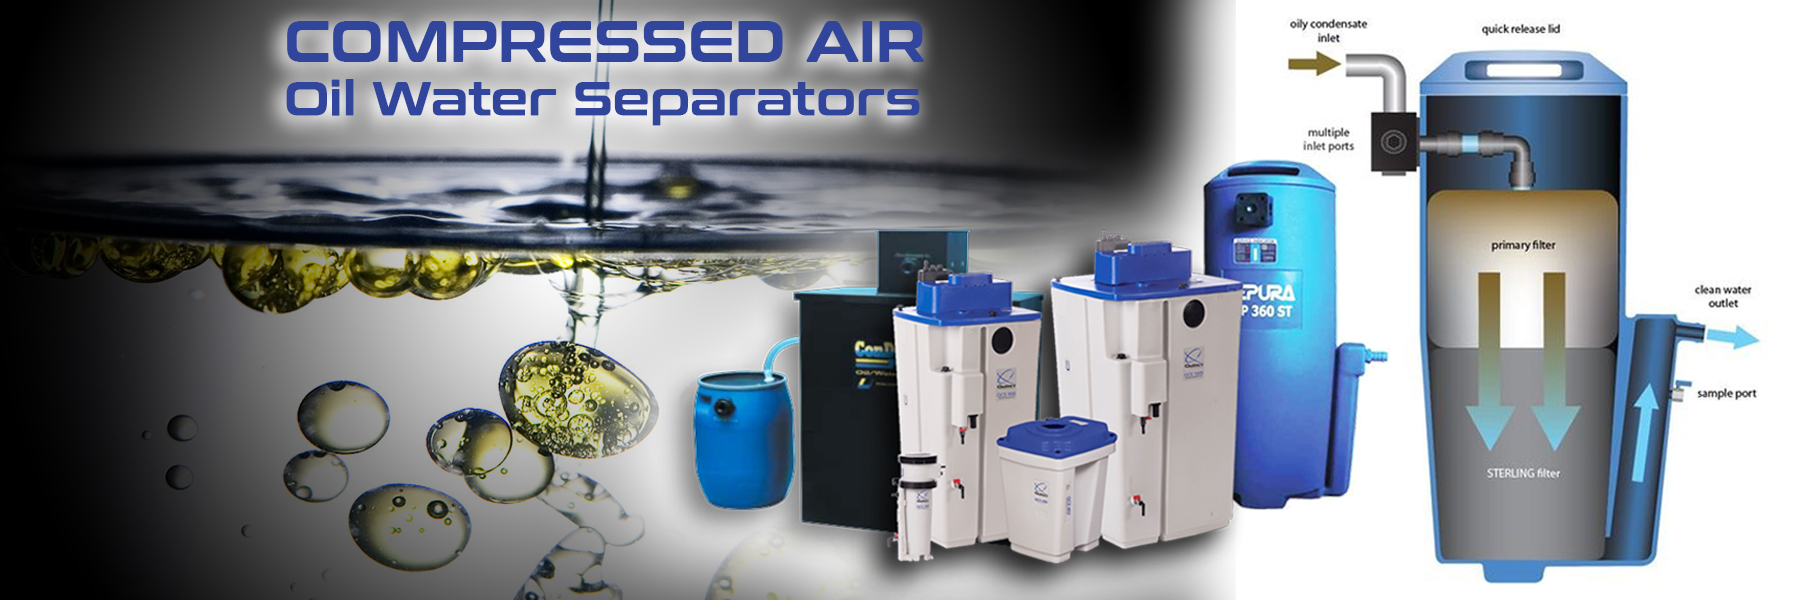 air compressor oil water separators